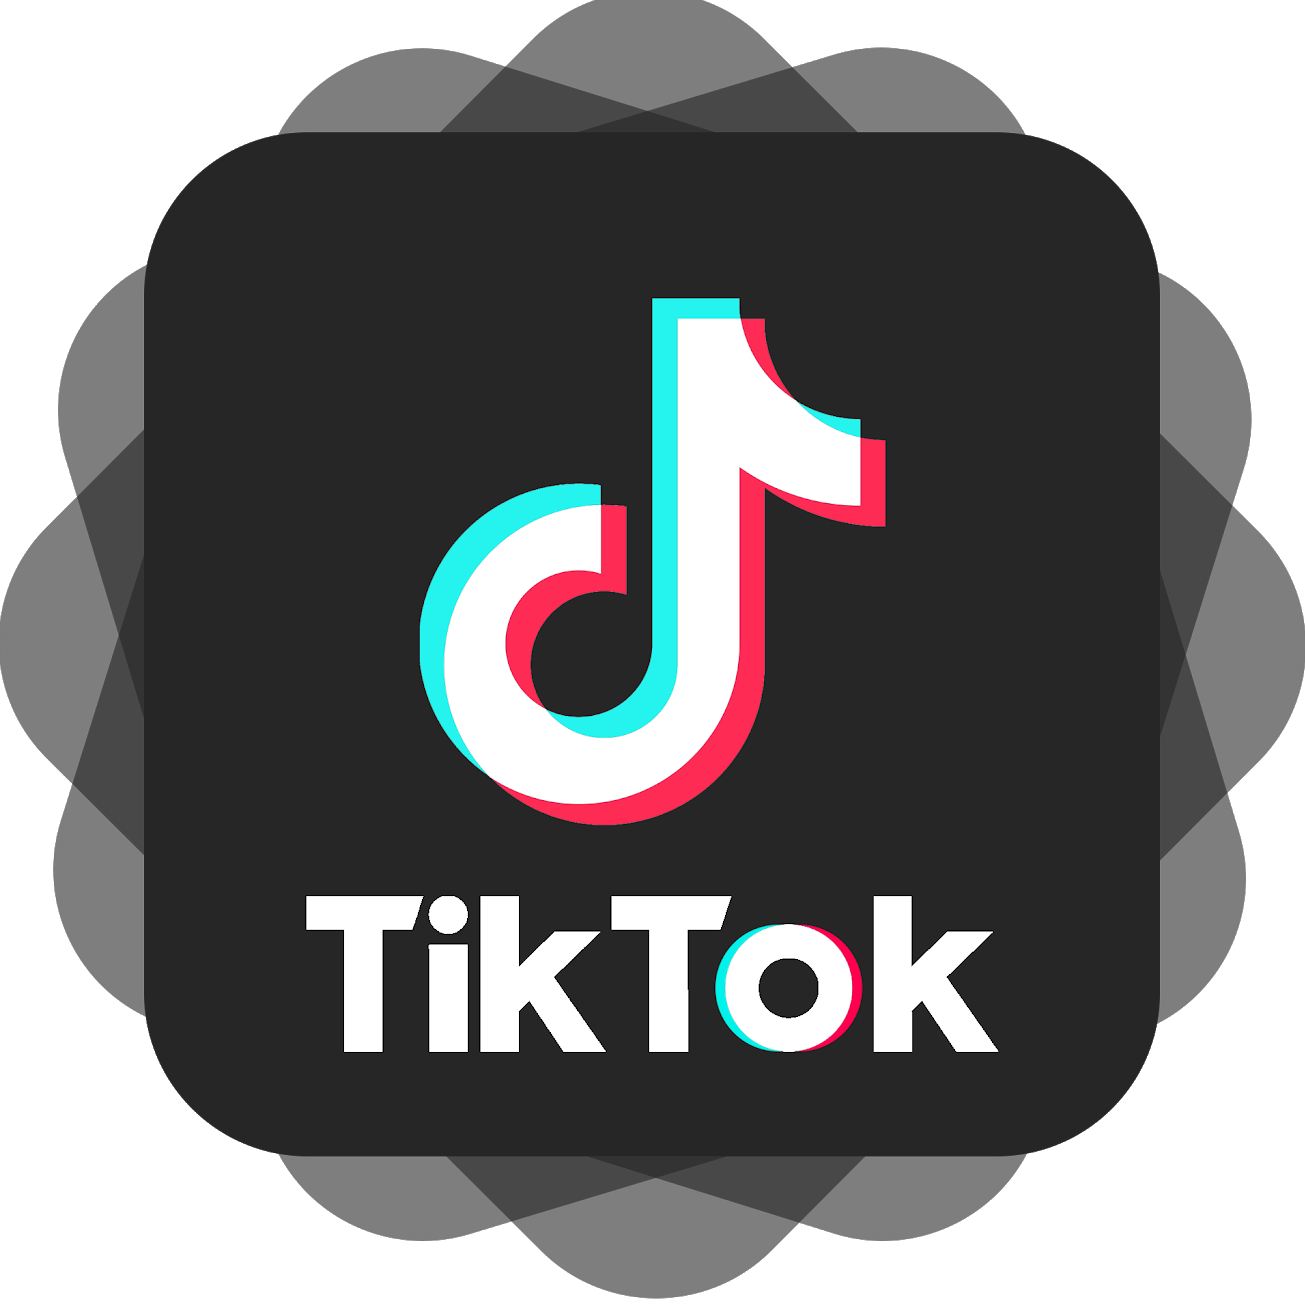 Acc Tiktok có mã giảm giá 50% dùng đặt đơn.